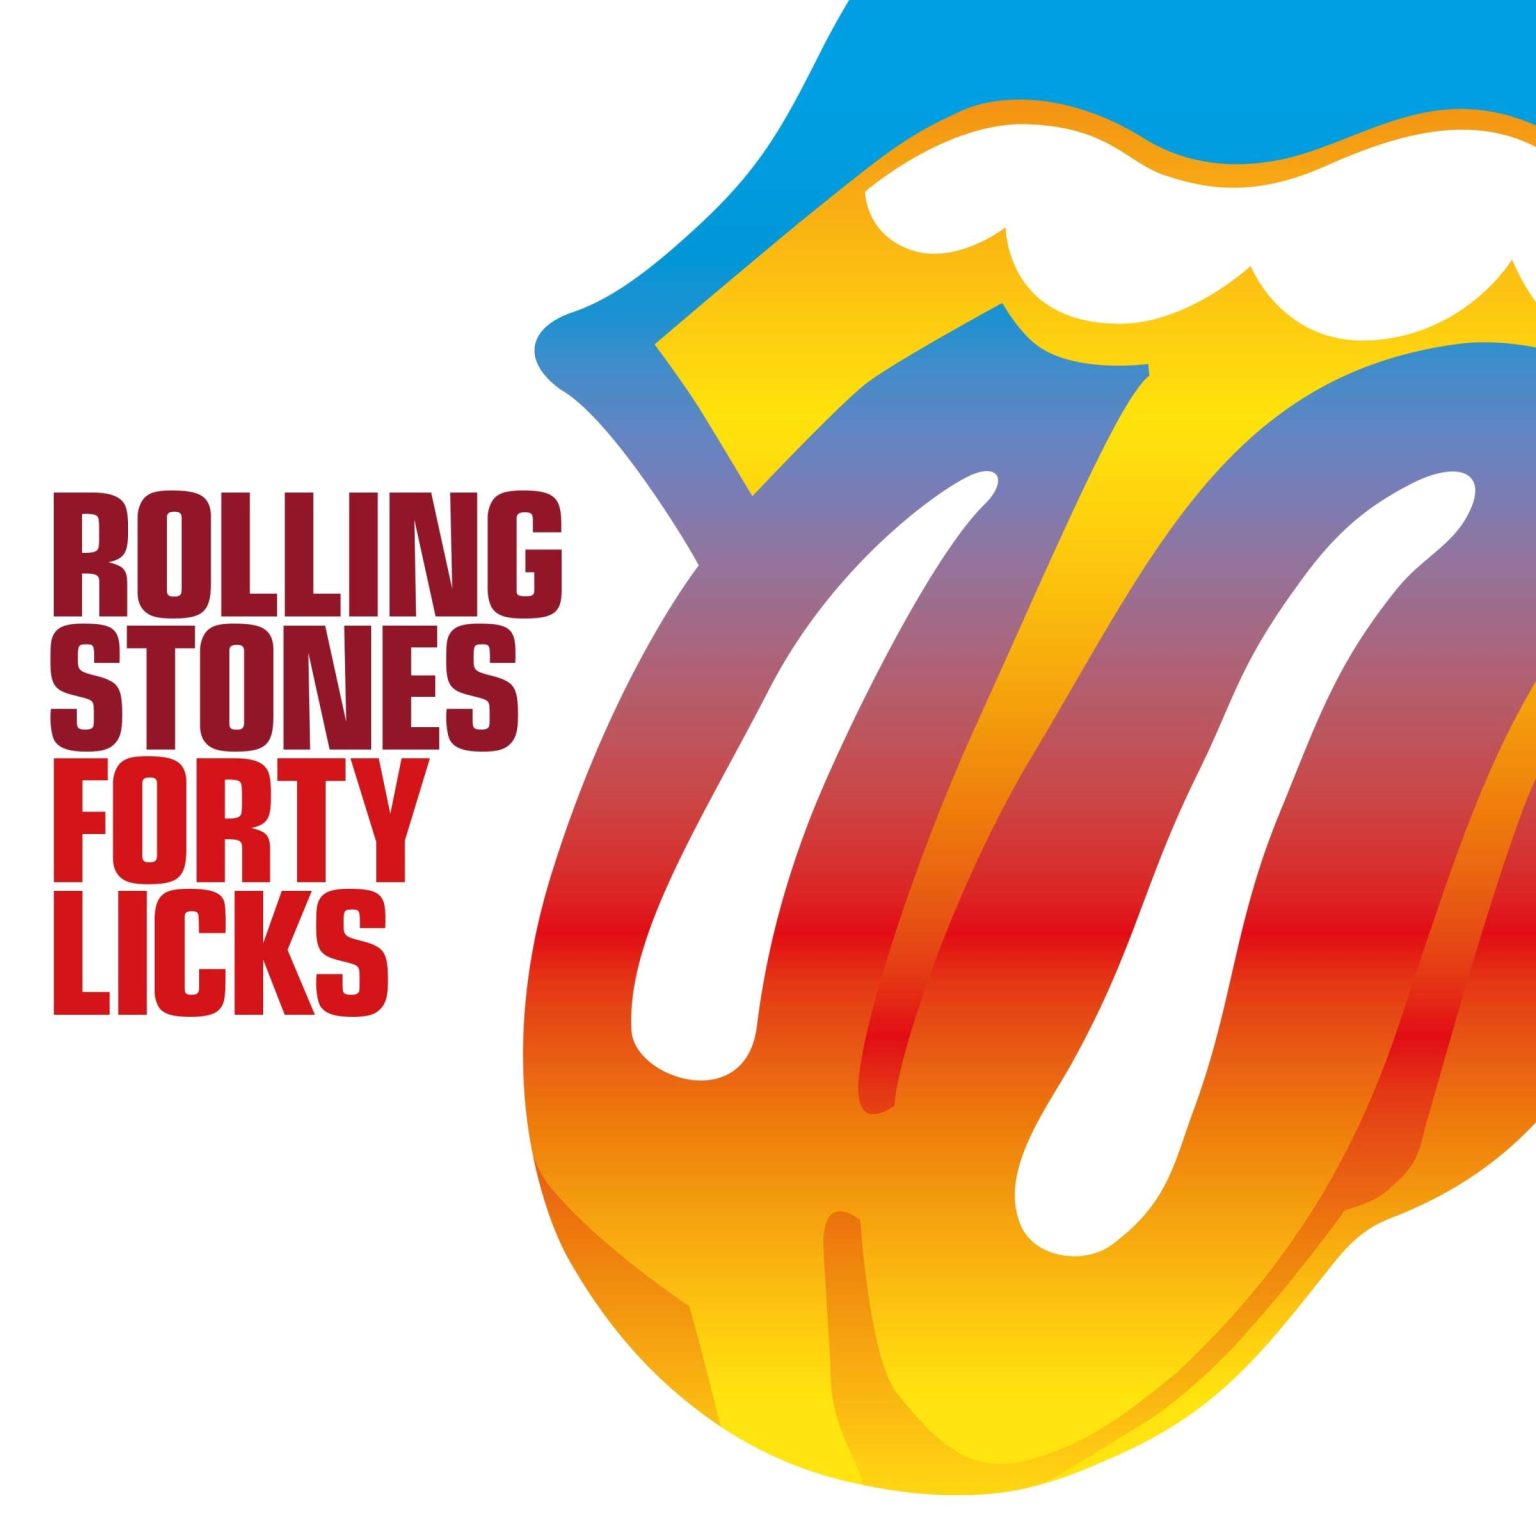 Okładka płyty winylwoej artysty The Rolling Stones o Forty Licks